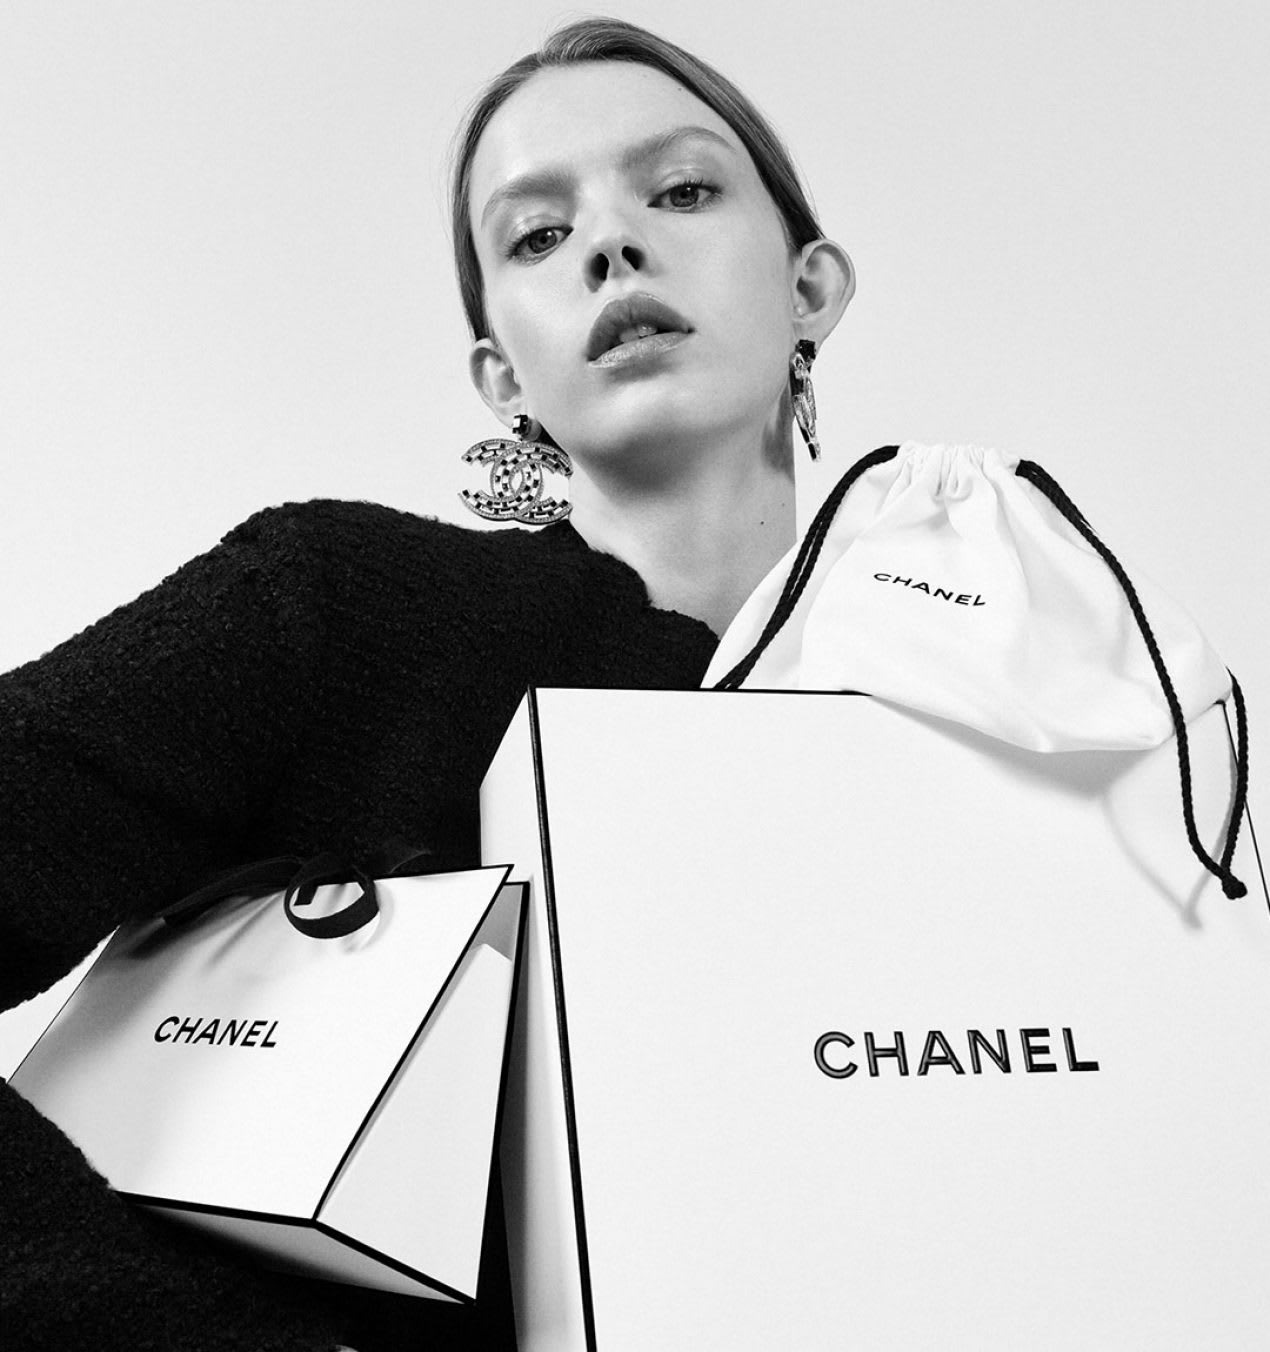 Nước Hoa CHANEL Eau De Cologne Les Exclusifs De Chanel – Eau de Toilette